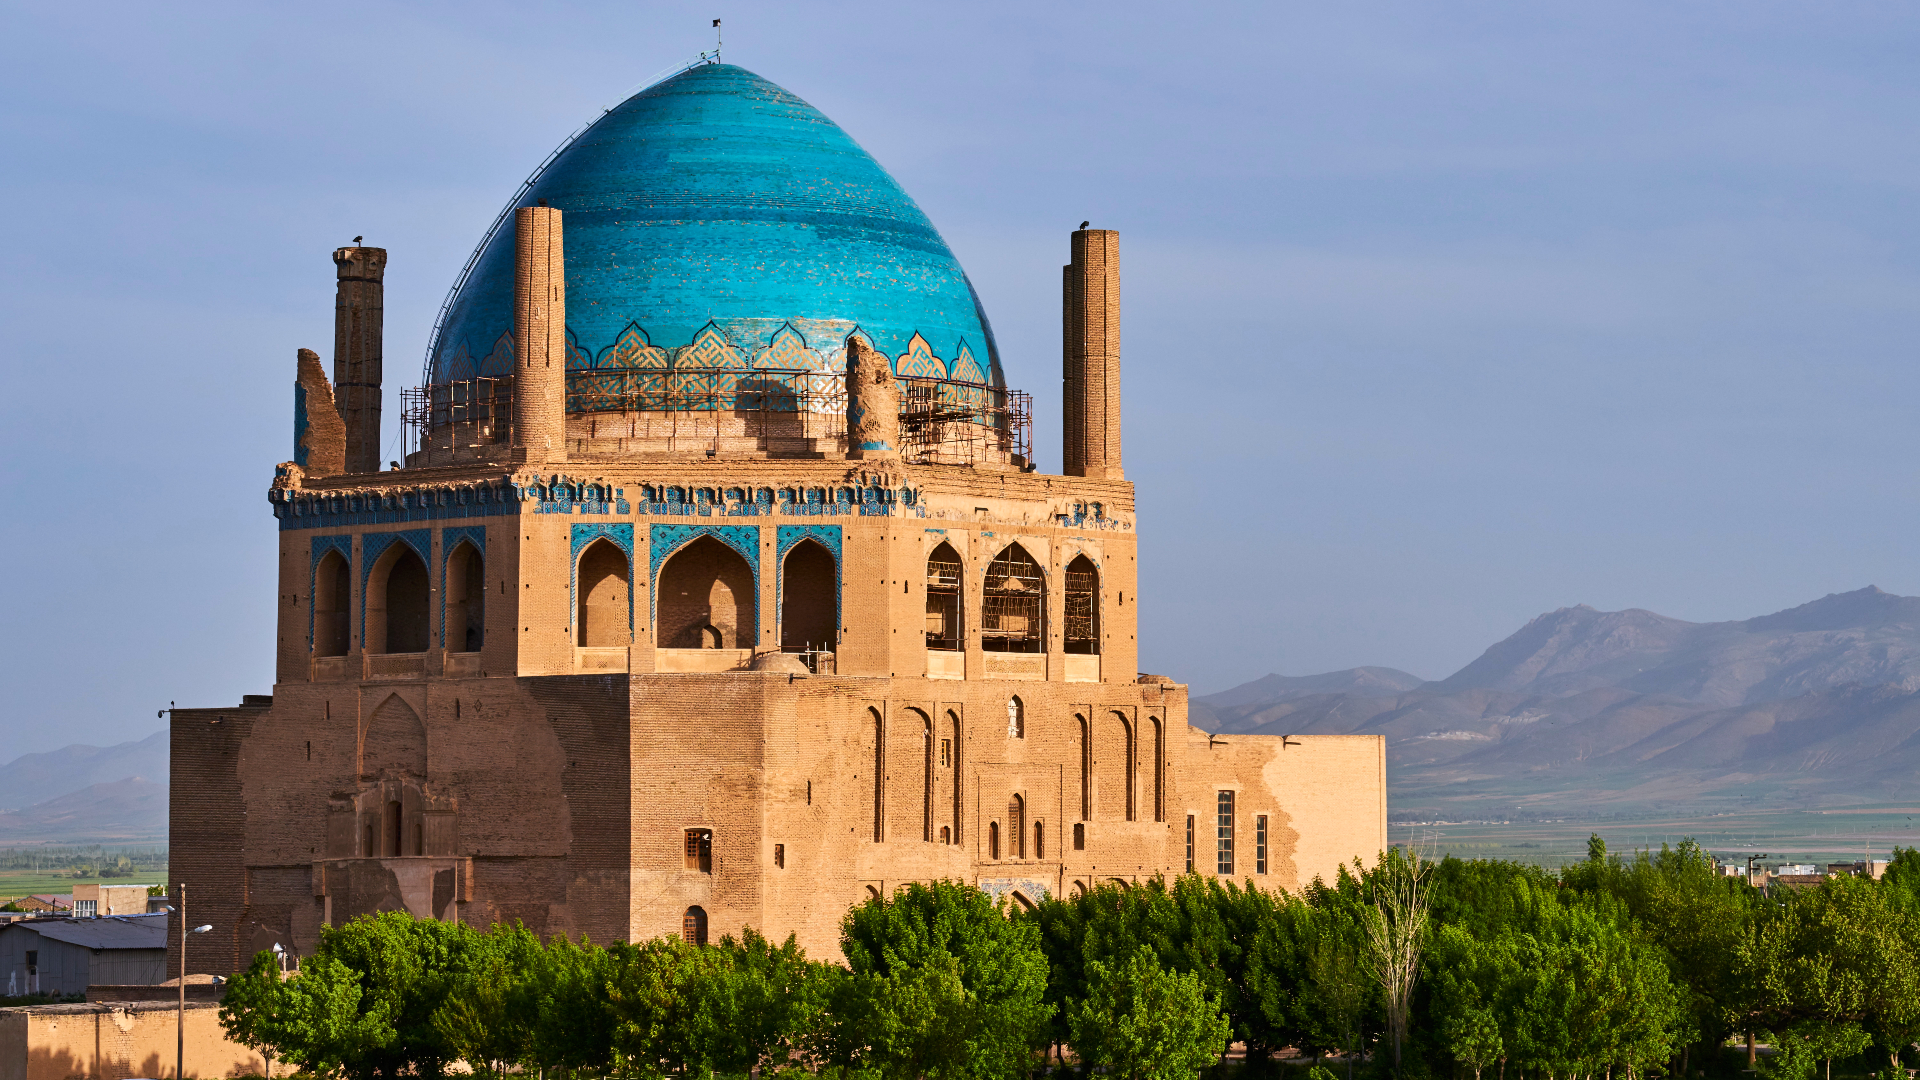 Oljeitu mausoleum in Soltaniyeh, Iran